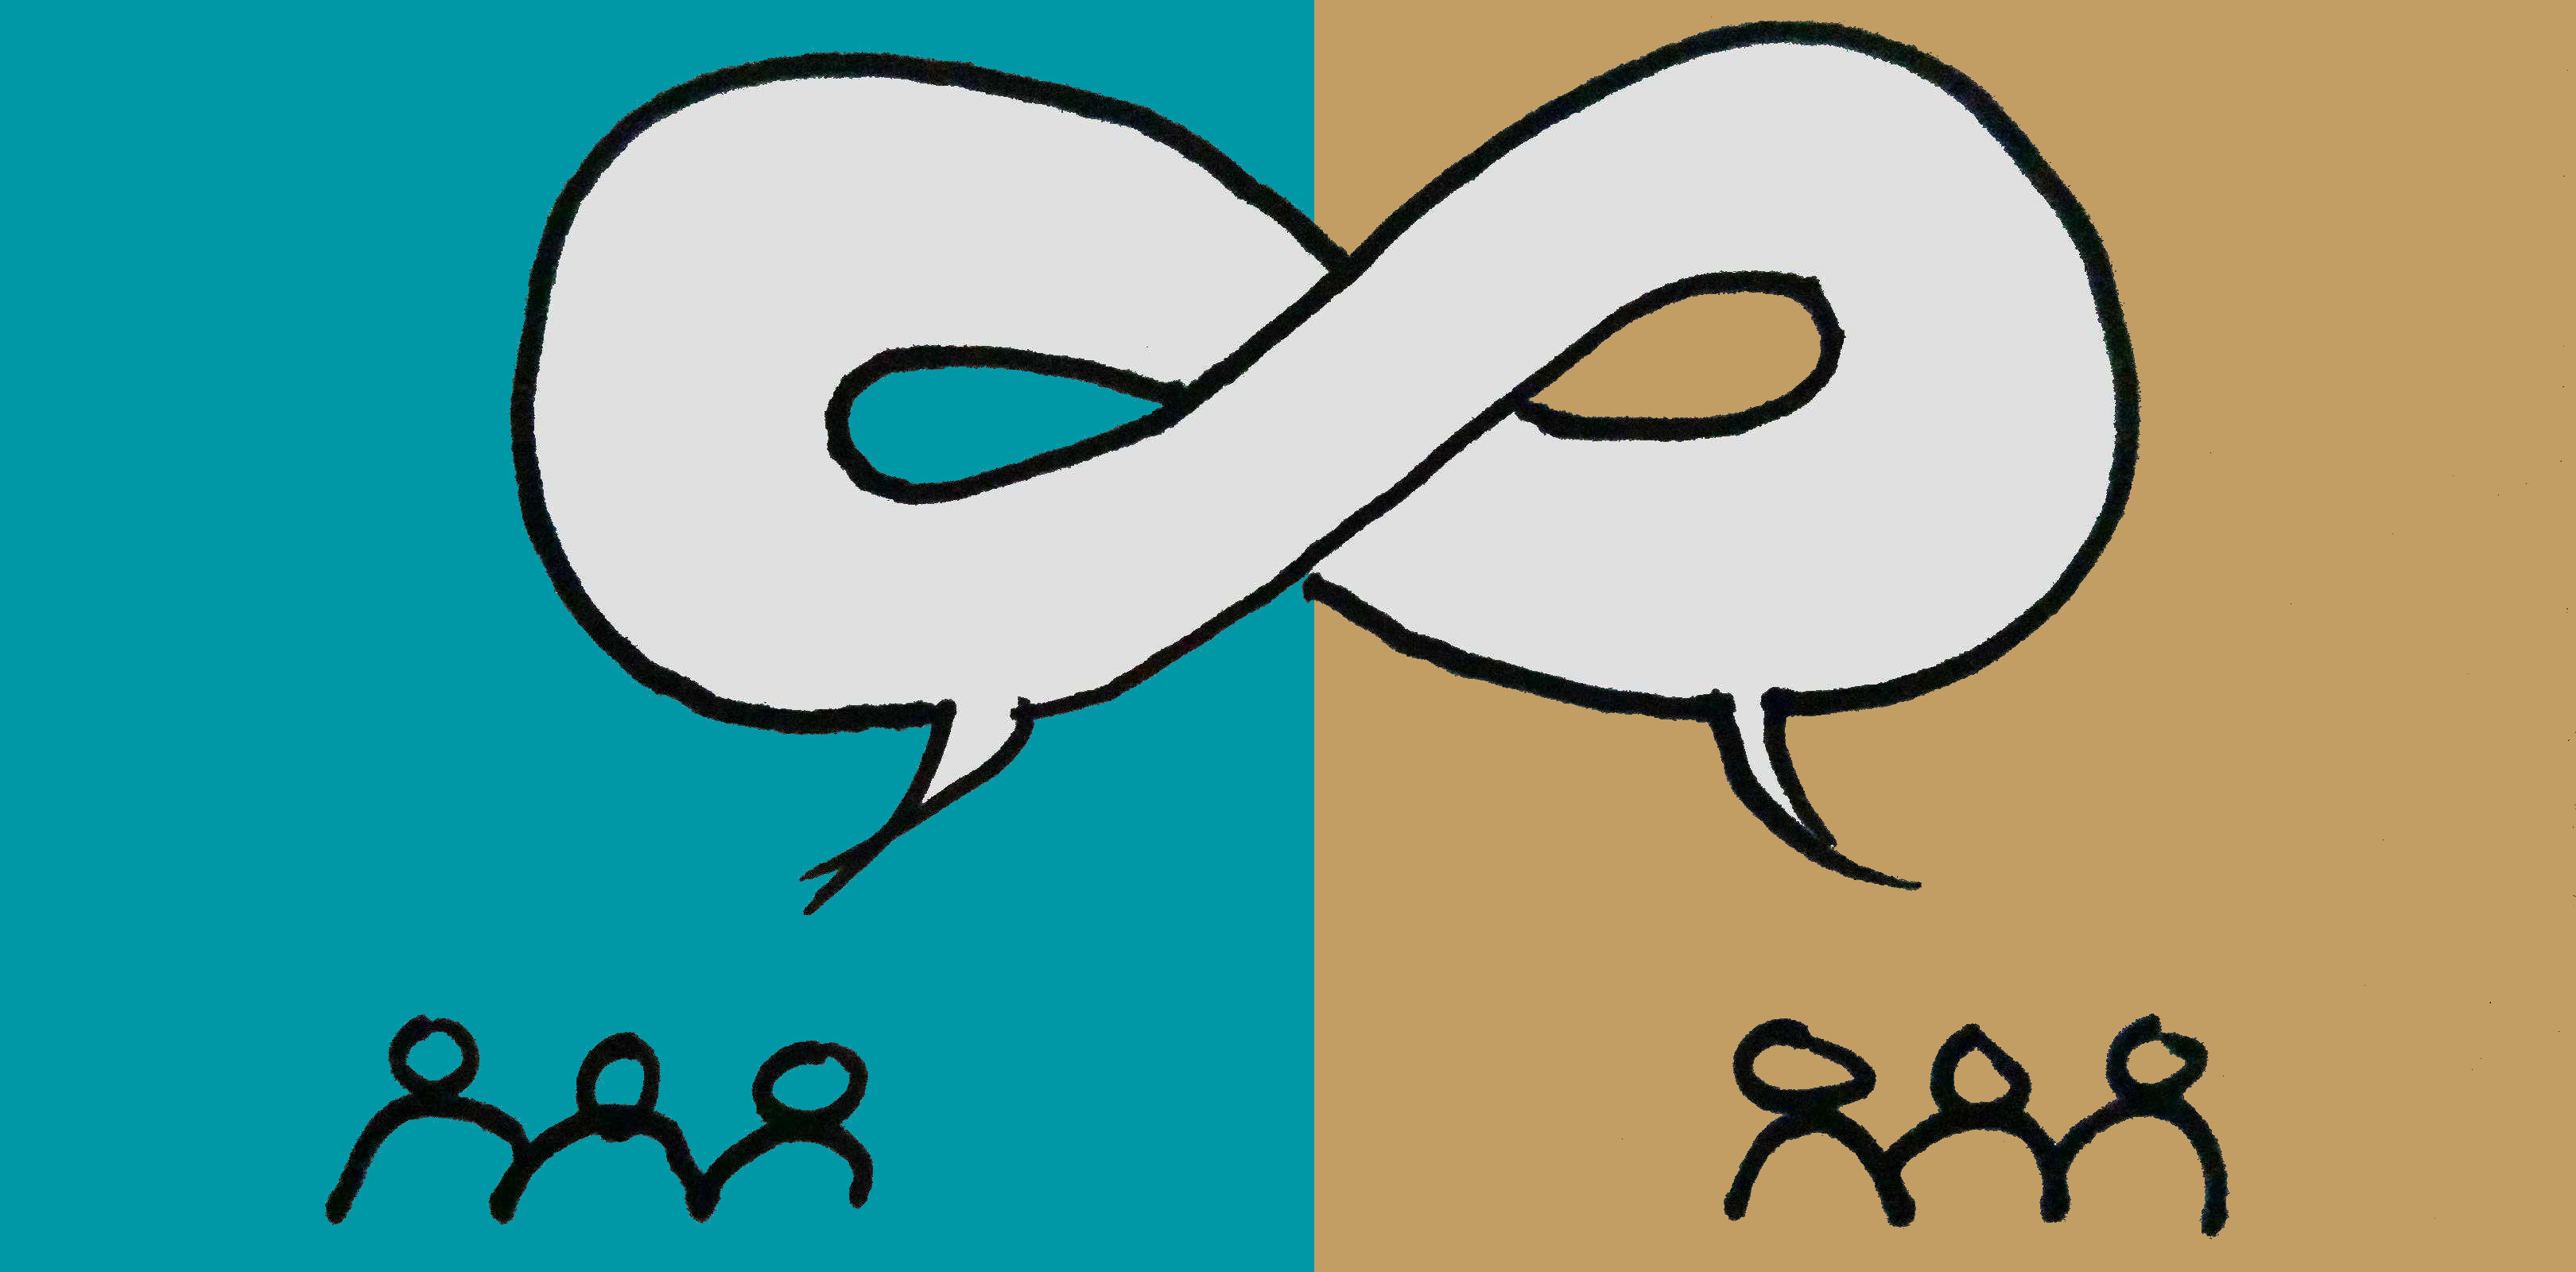 Illustration d'un débat sans fin, ou 2 groupes affrontent leurs arguments sans s'ecouter mutuellement